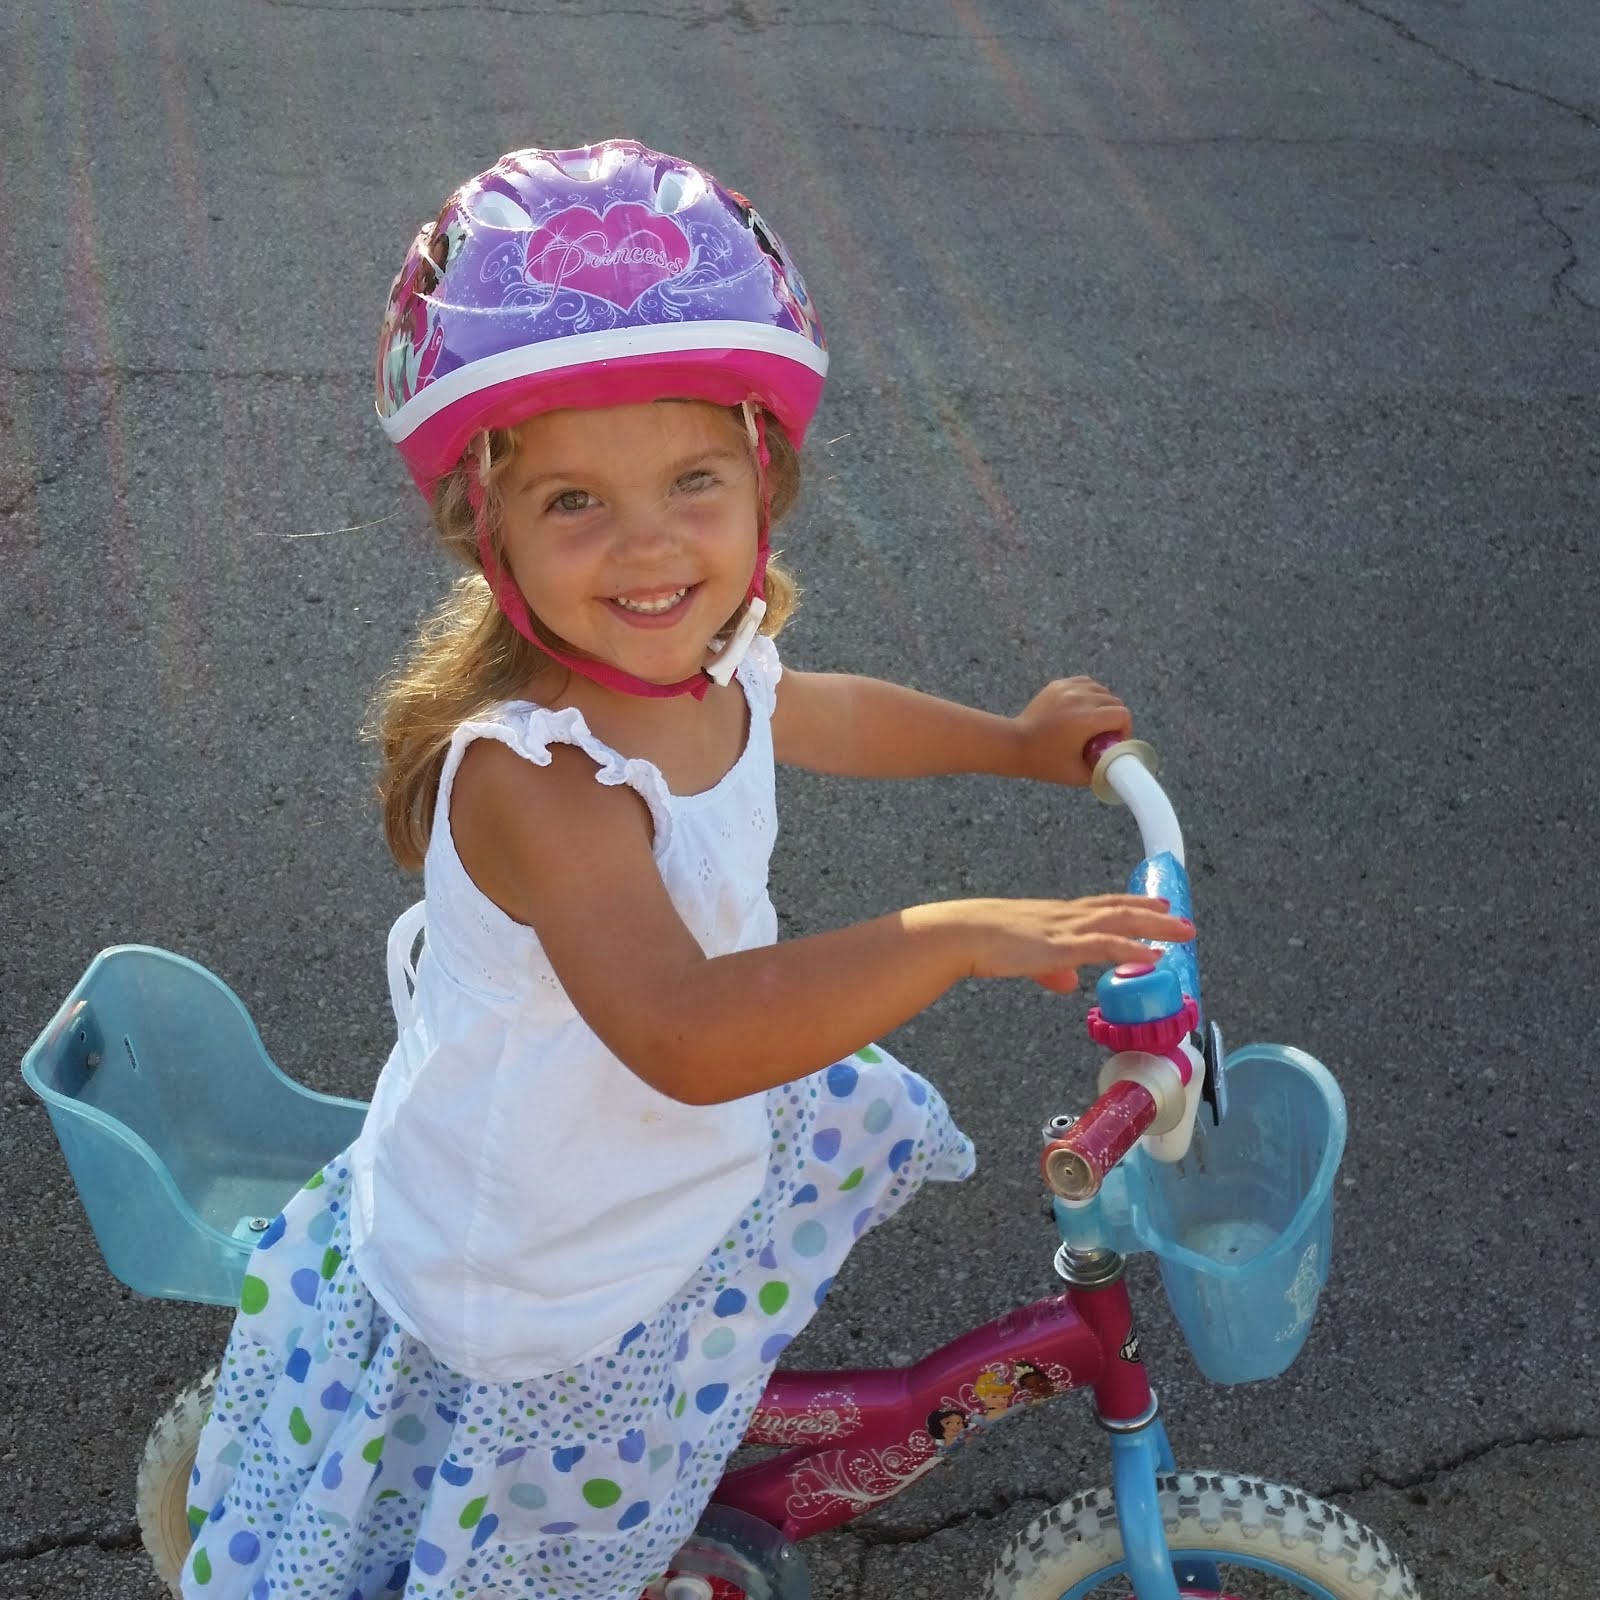 Sadie Riding her Bike